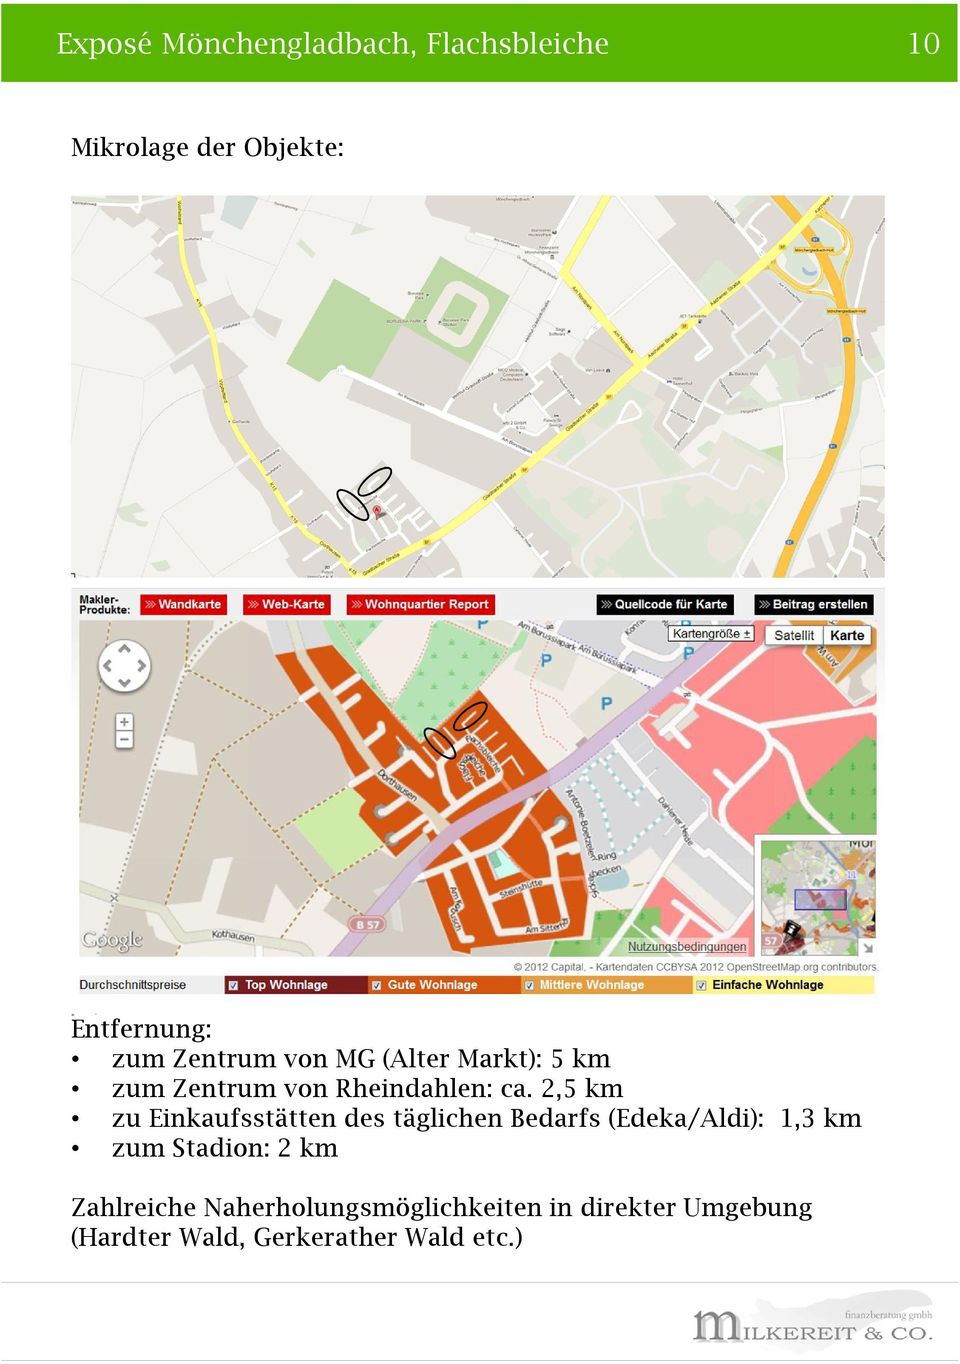 2,5 km zu Einkaufsstätten des täglichen Bedarfs (Edeka/Aldi): 1,3 km zum Stadion: